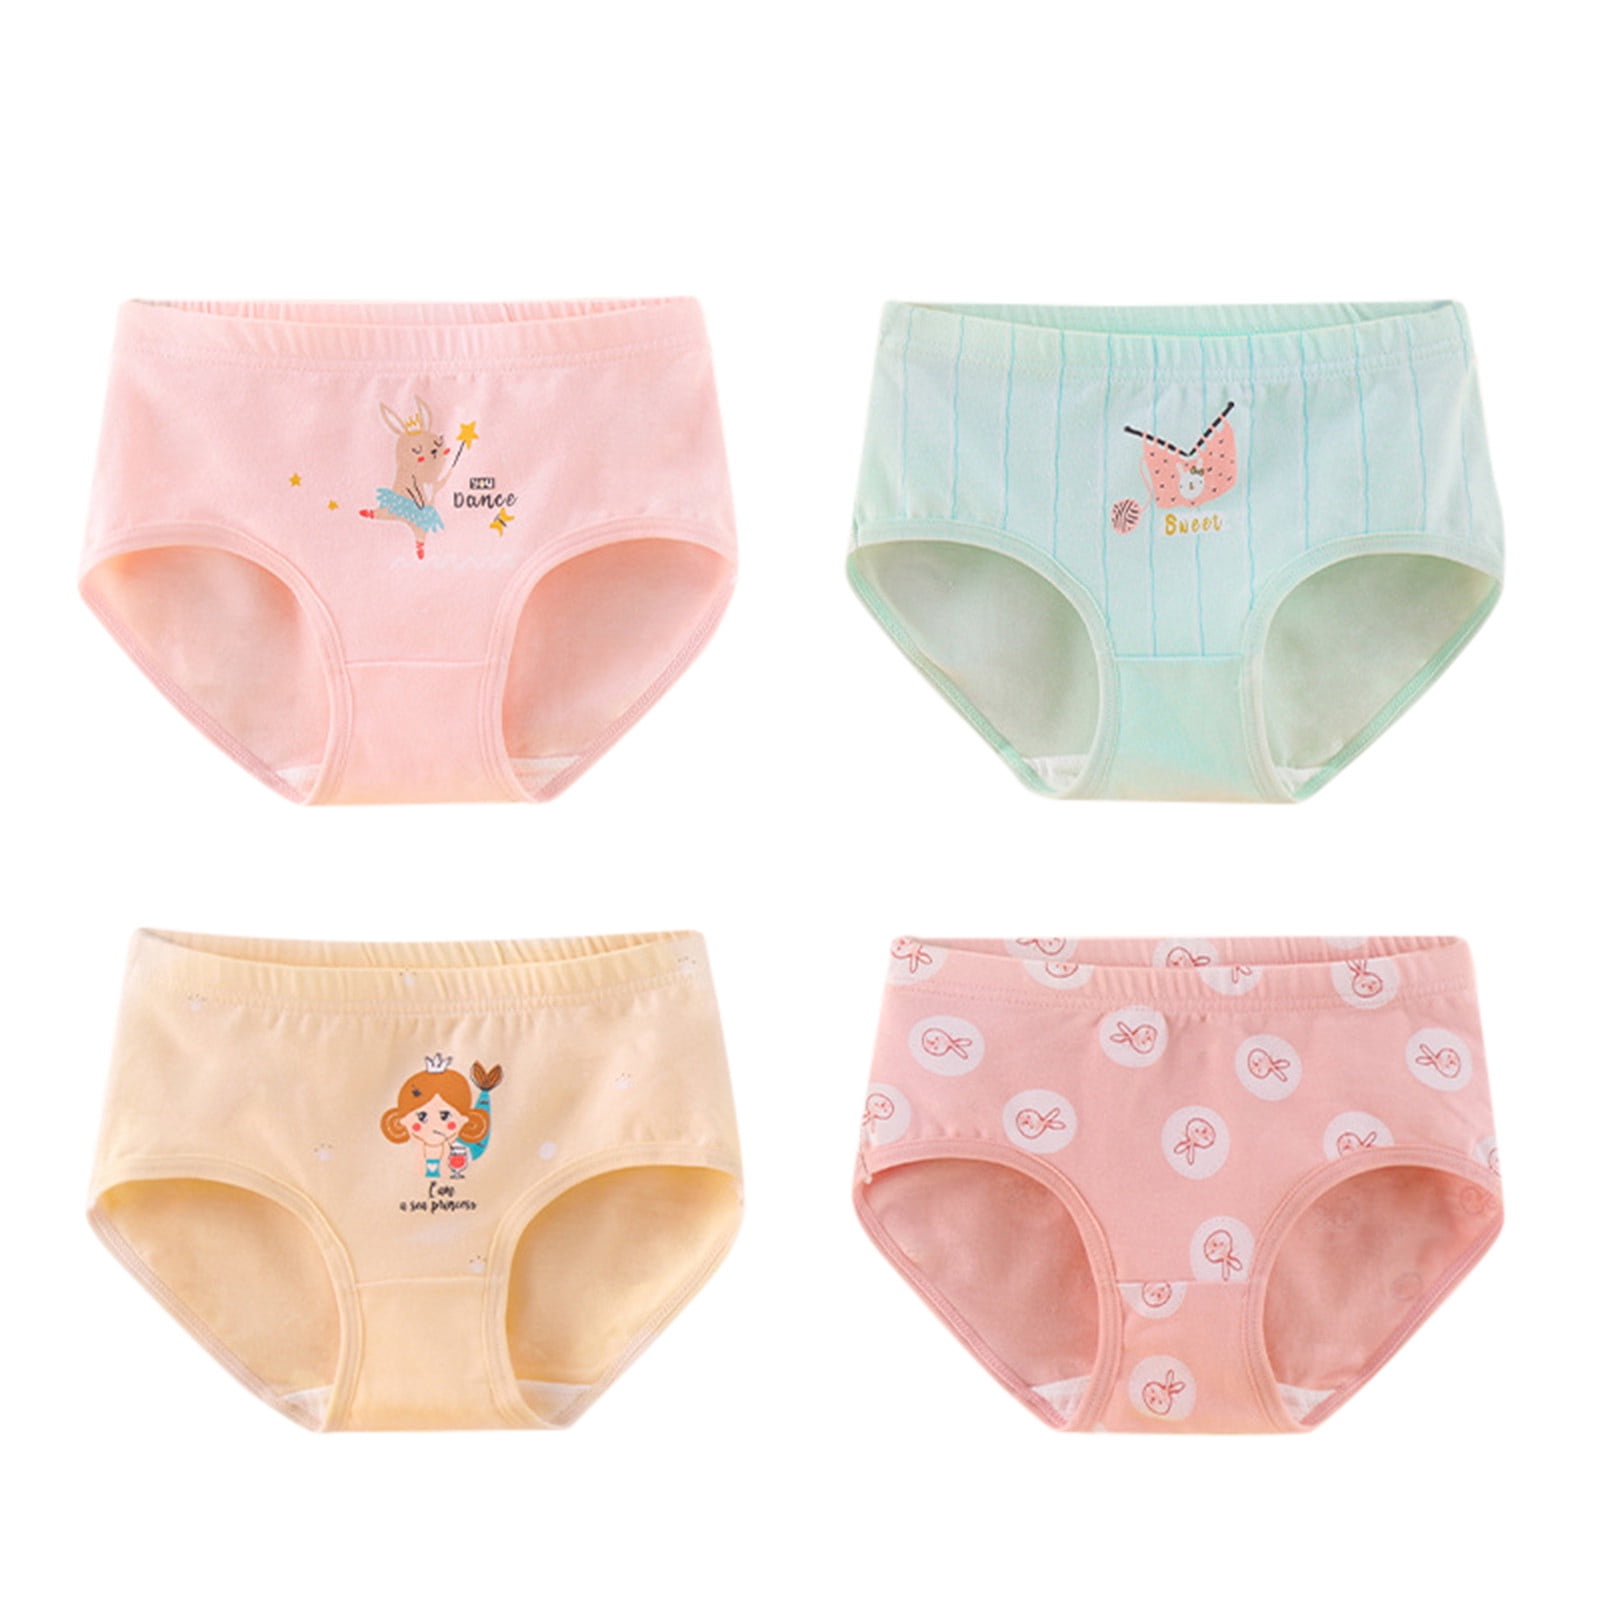 Toddler Underwear Kids Undies Girls Cotton Panties Size 3-4T (Pack